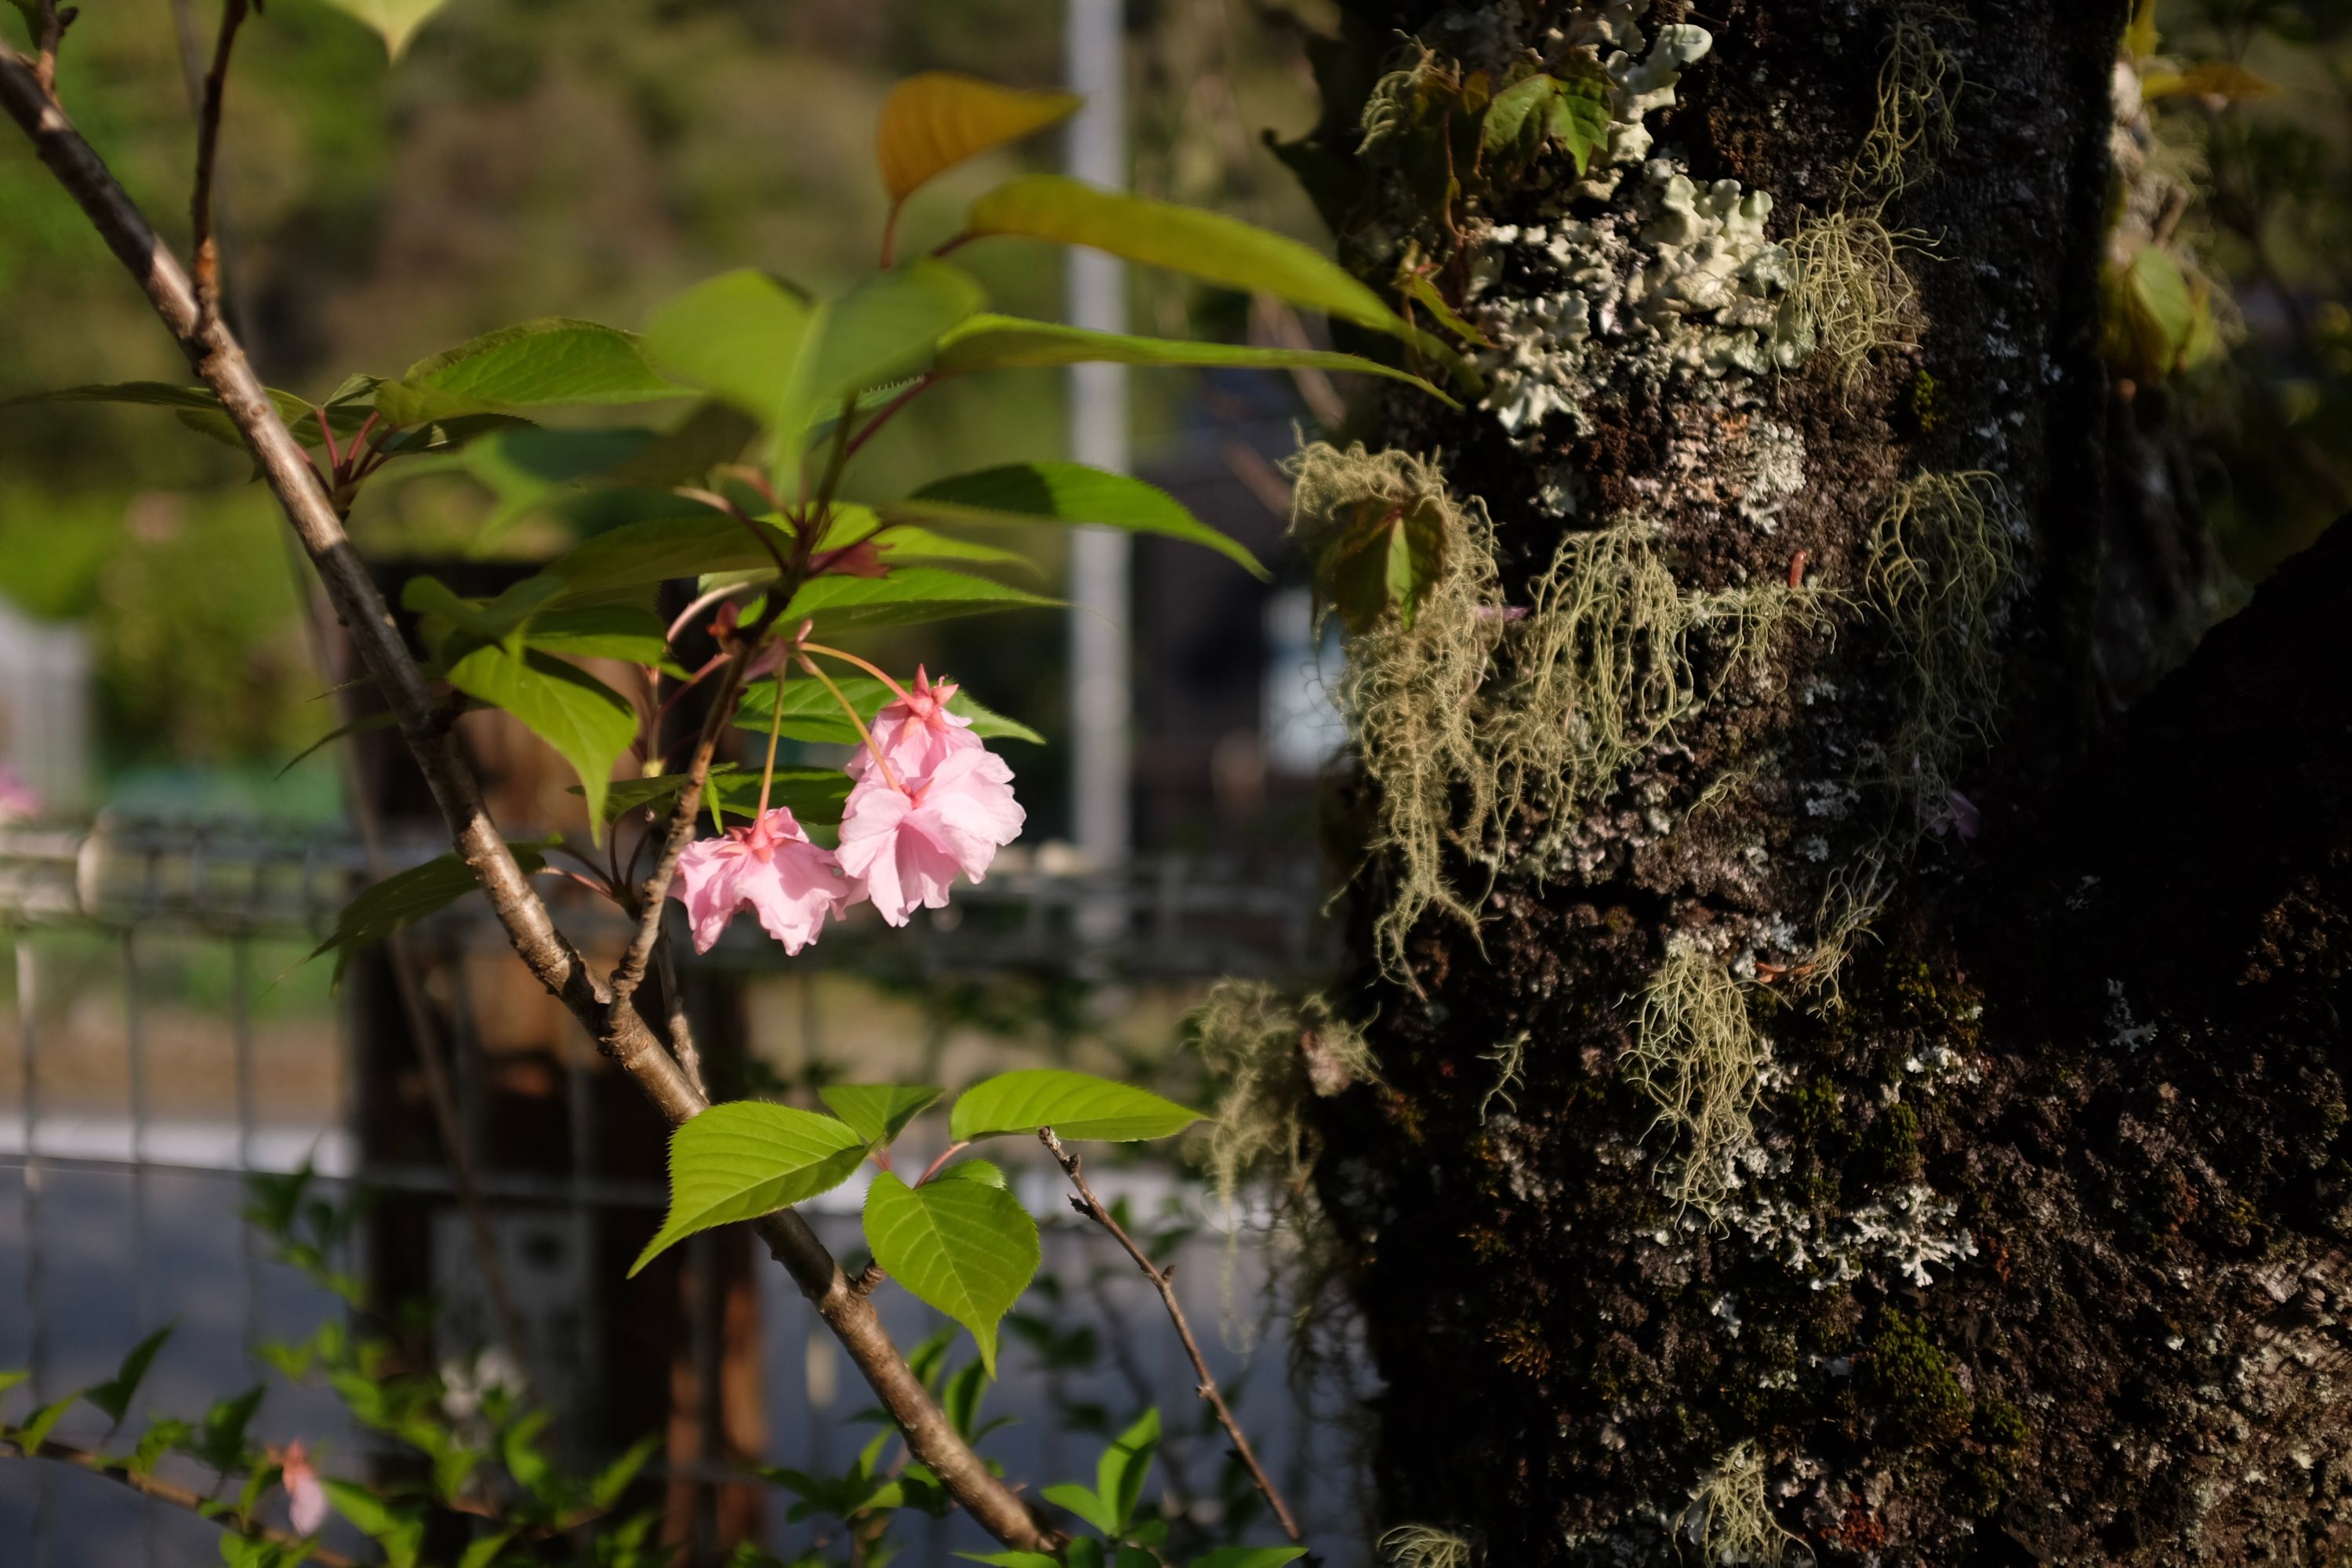 Flowering cherry tree at the Upper Shiiba Dam, Miyazaki. Photo: Peter Orosz